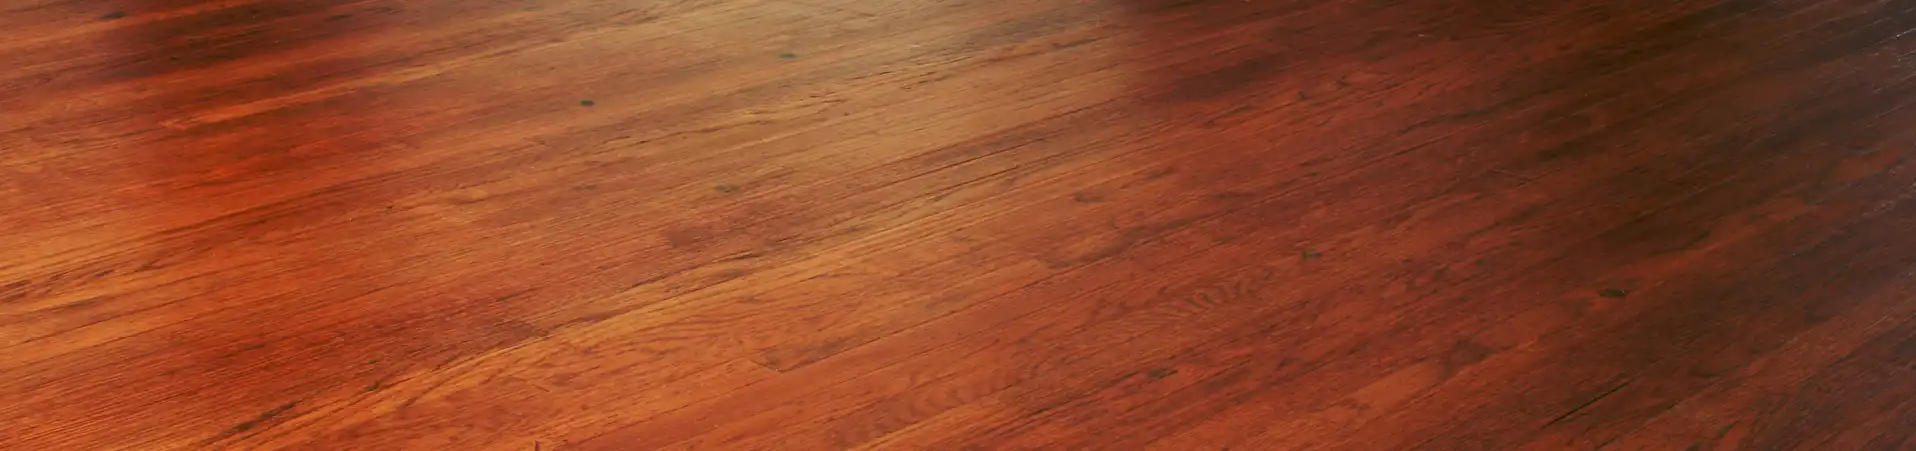 Photo of freshly refinished hardwood floor